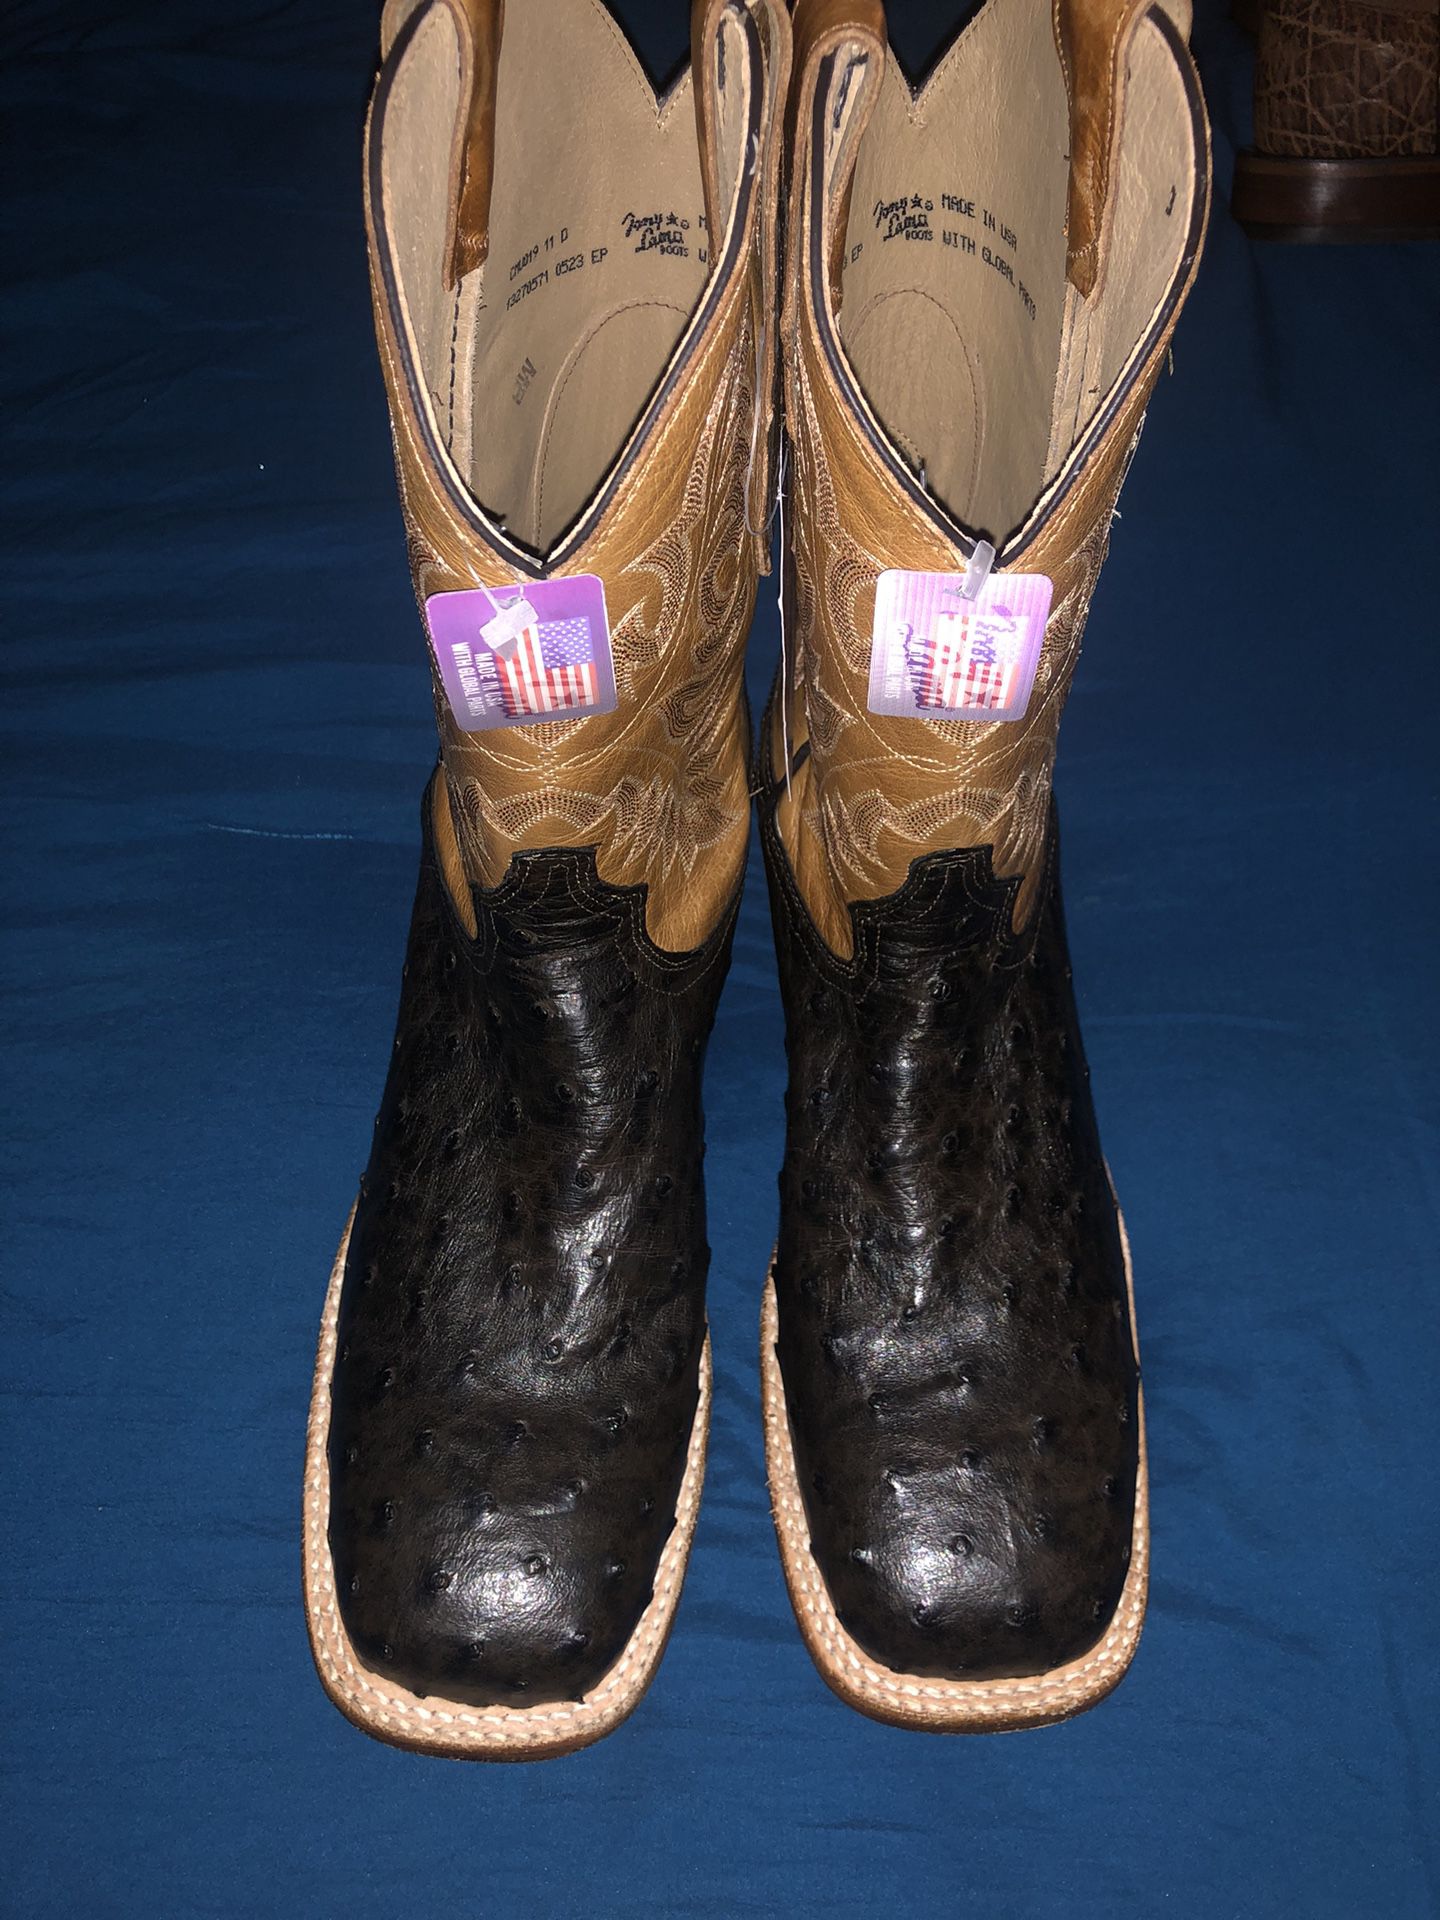 New Tony Lama Boots 11D.  $230. OBO 